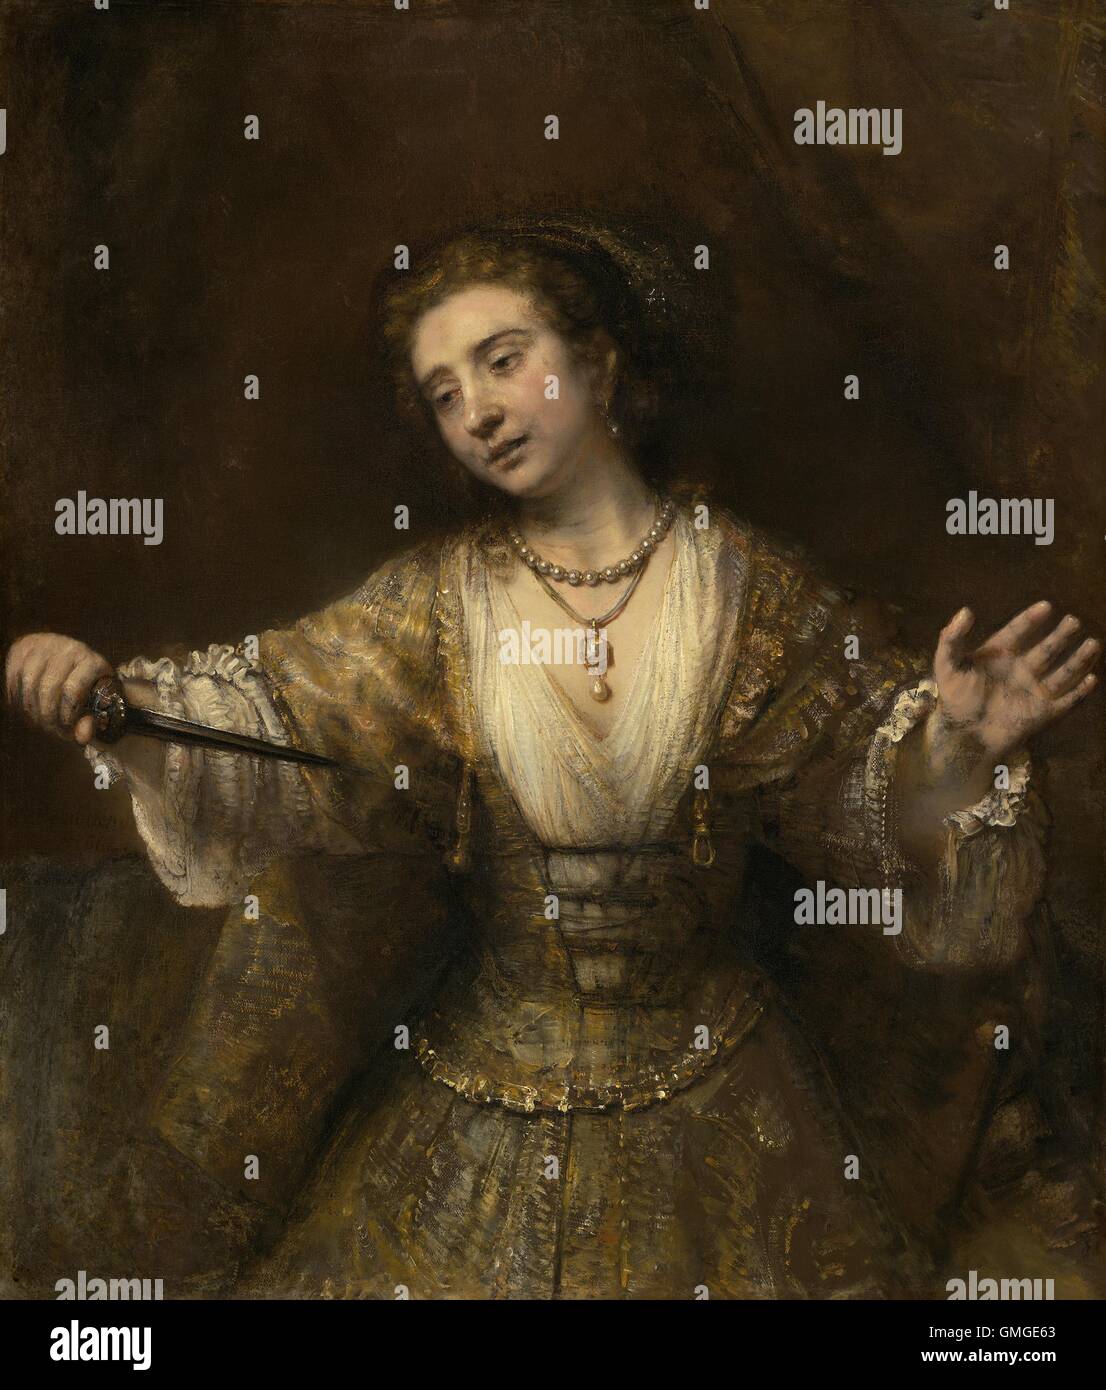 Lucrèce, de Rembrandt van Rijn, 1664, la peinture hollandaise, huile sur toile. Lucrèce, épouse Lucius Tarquinius Collatinus, était un 6ème siècle BCE matrone romaine vertueuse qui s'est tuée après avoir été violée par le fils du roi étrusque, Sextus Tarquin. Le tumulte causé (BSLOC 2016 5 35) Banque D'Images